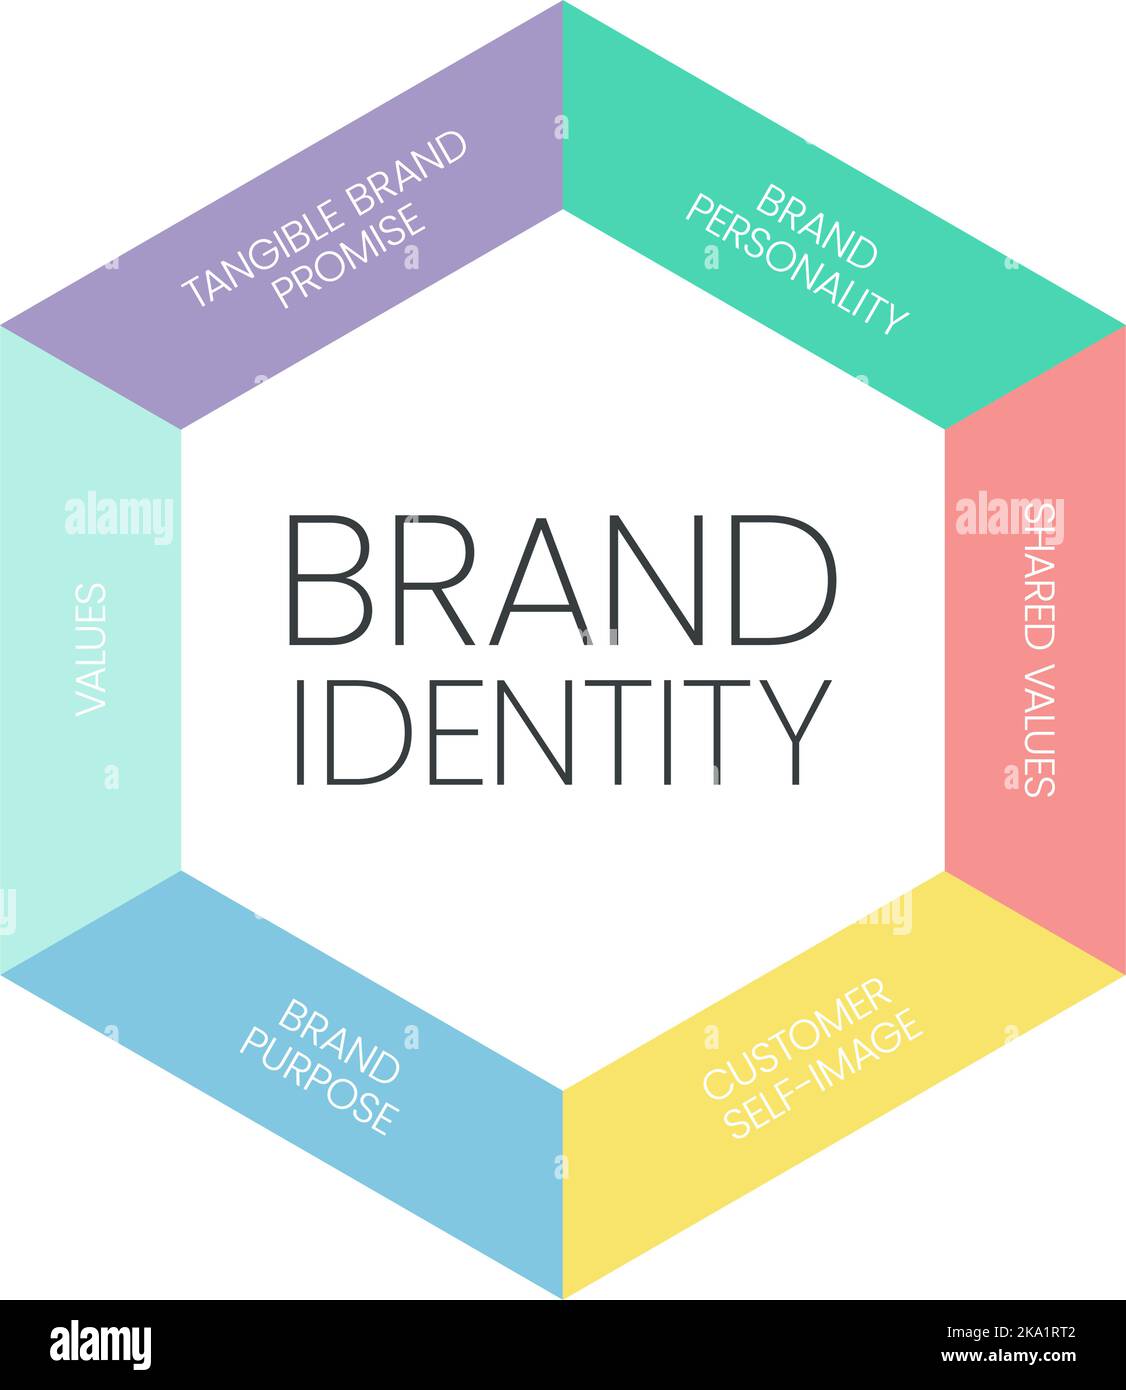 Die Infografik zur Markenidentität ist ein digitales Marketingkonzept in 6 Elementen, um die Marke in den Köpfen der Verbraucher zu unterscheiden, z. B. die Markenpersönlichkeit, s. Stock Vektor